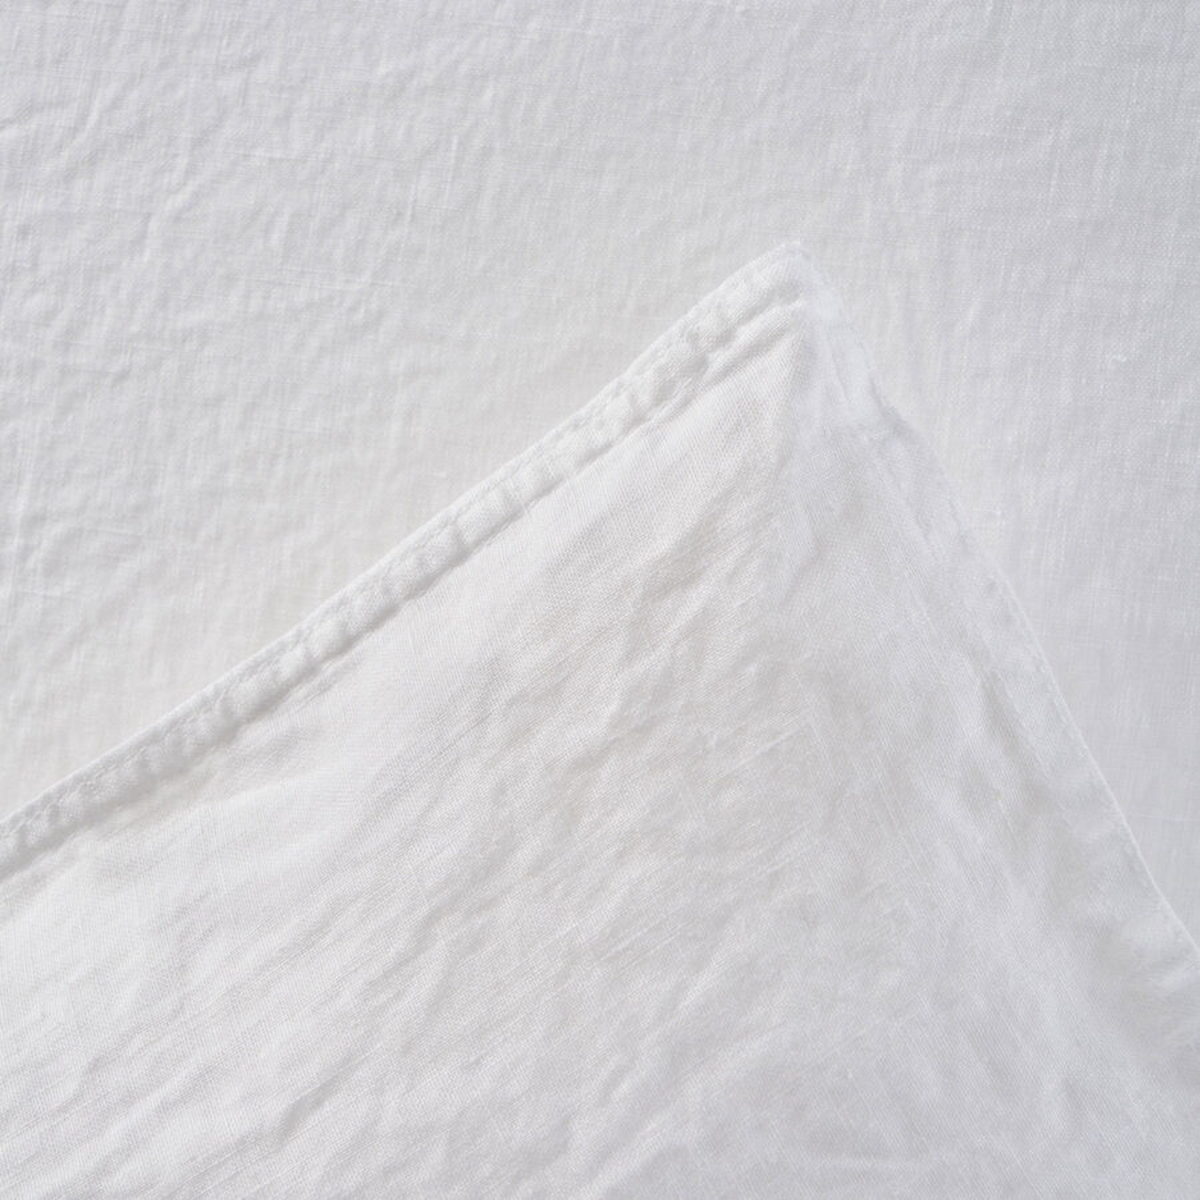 Duvet Cover Detail of White Yves Delorme Originel Bedding